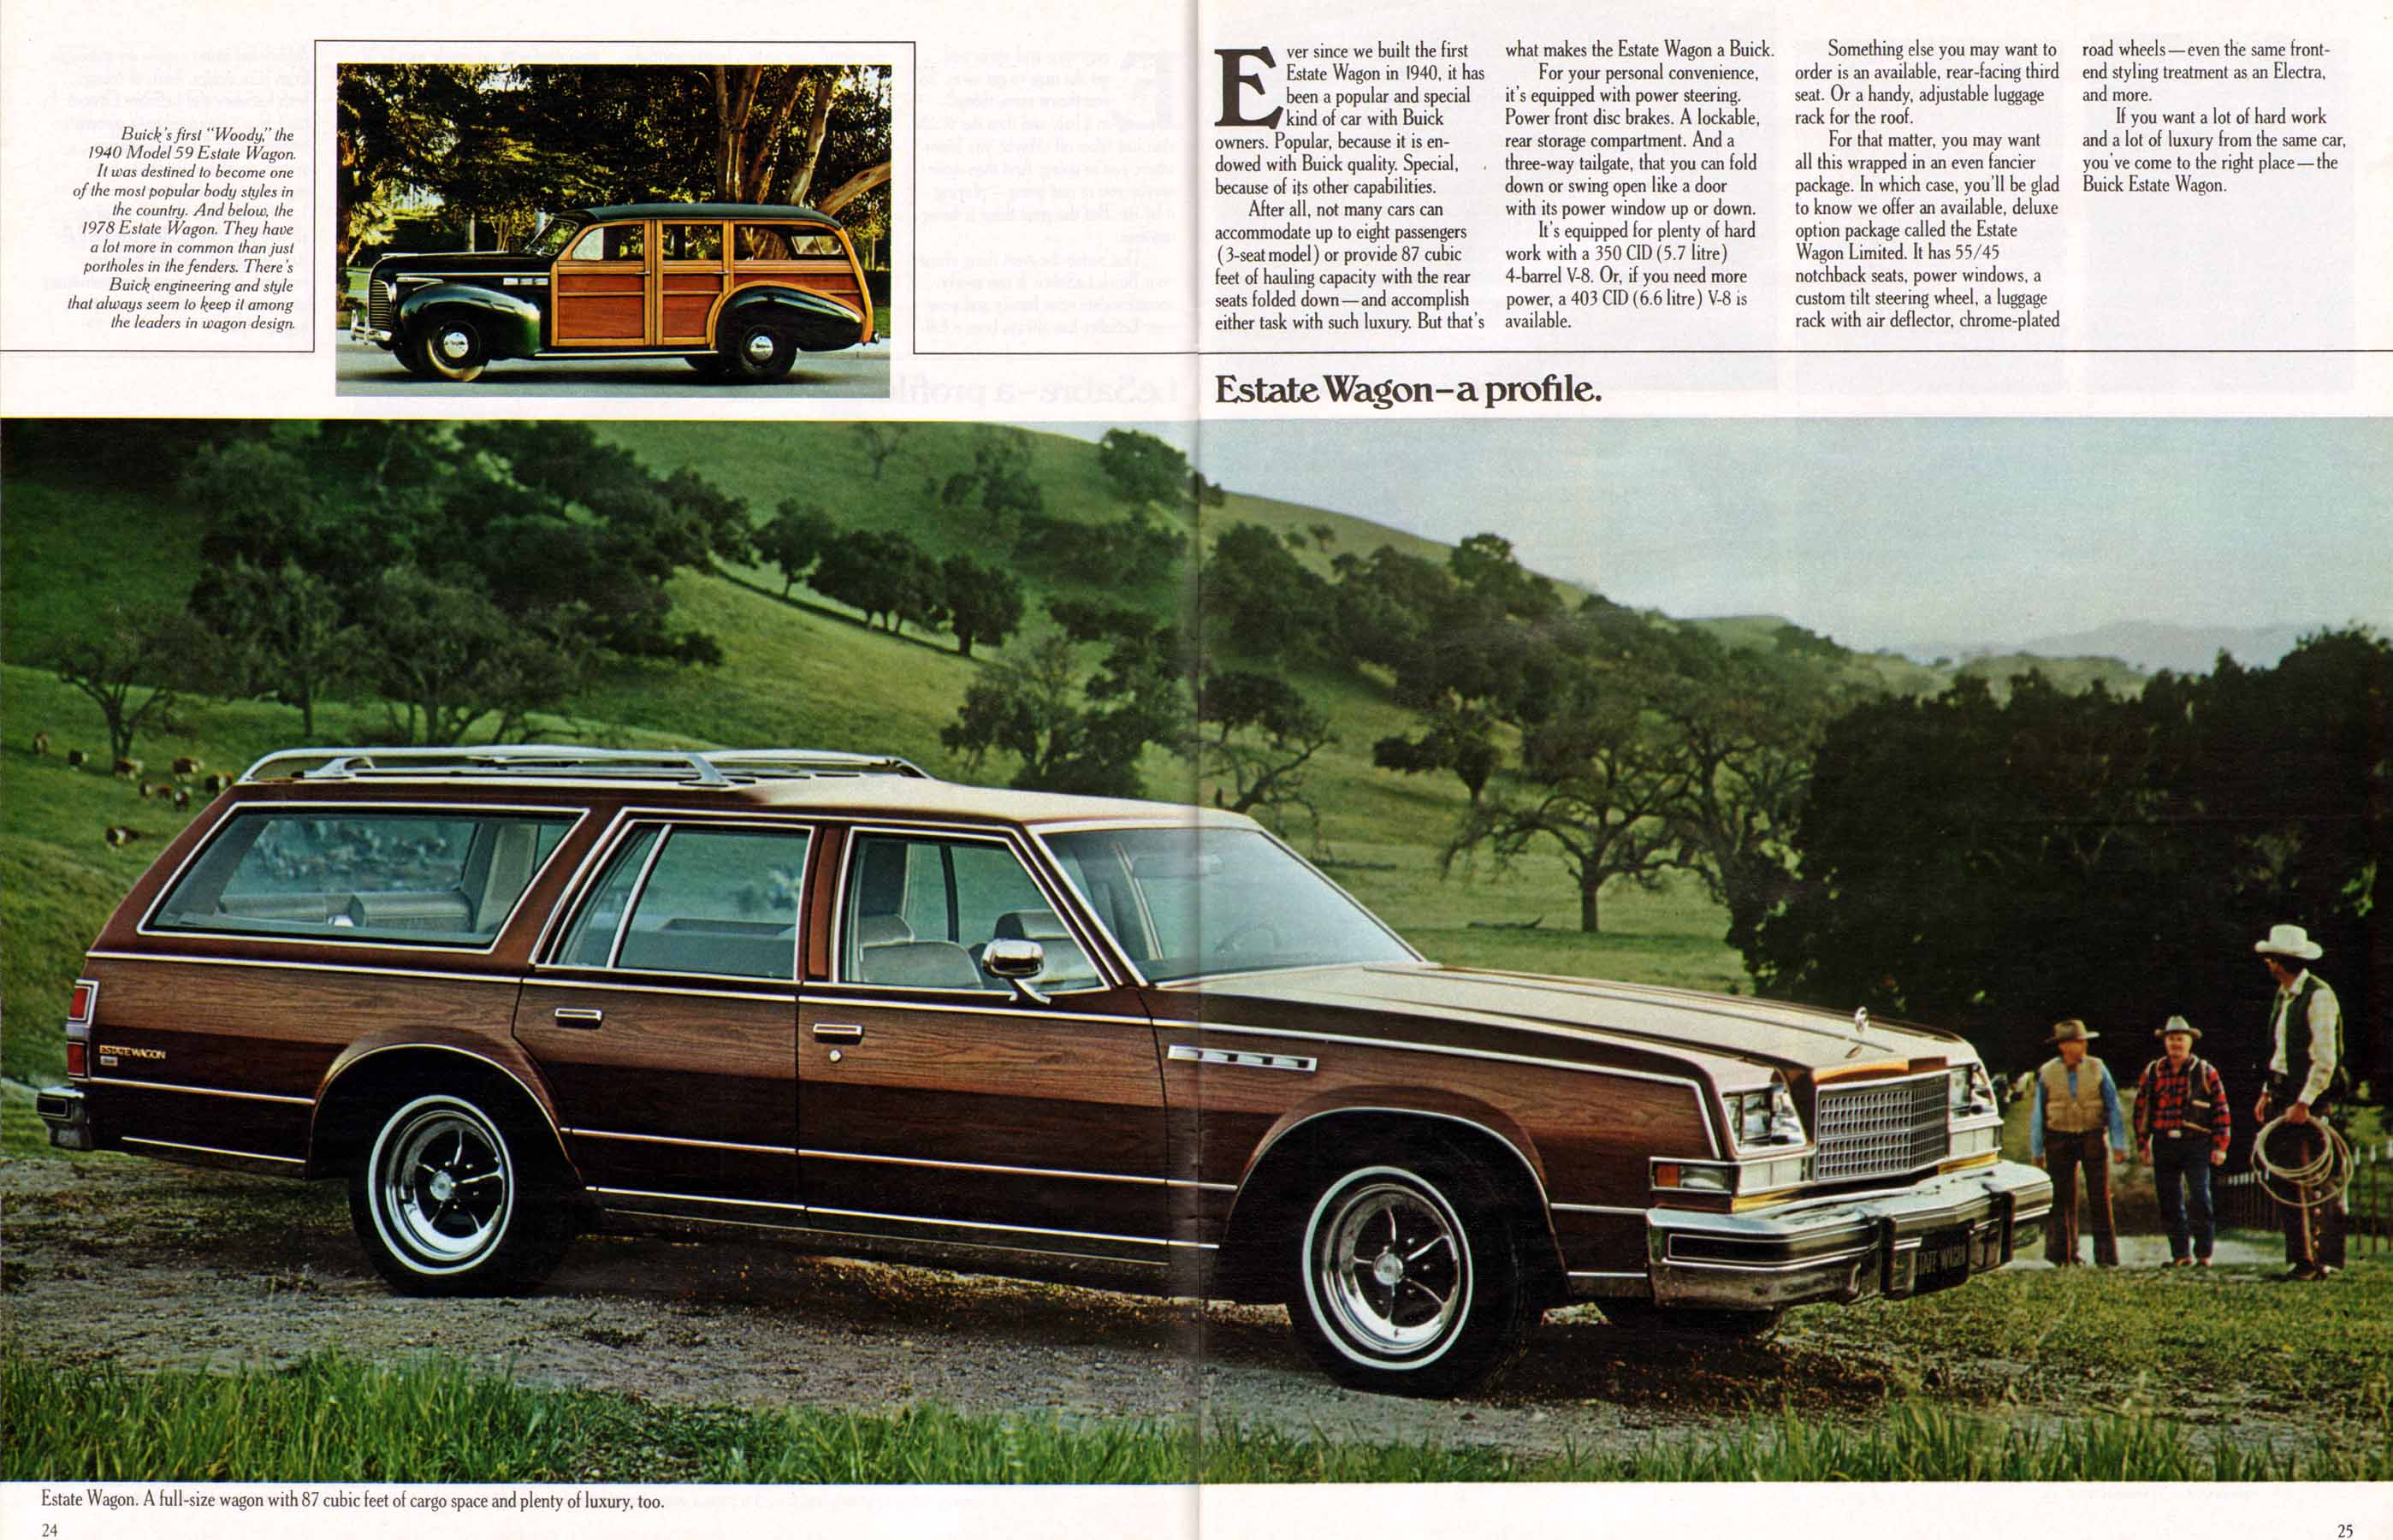 1978 Buick Full Line Prestige-24-25